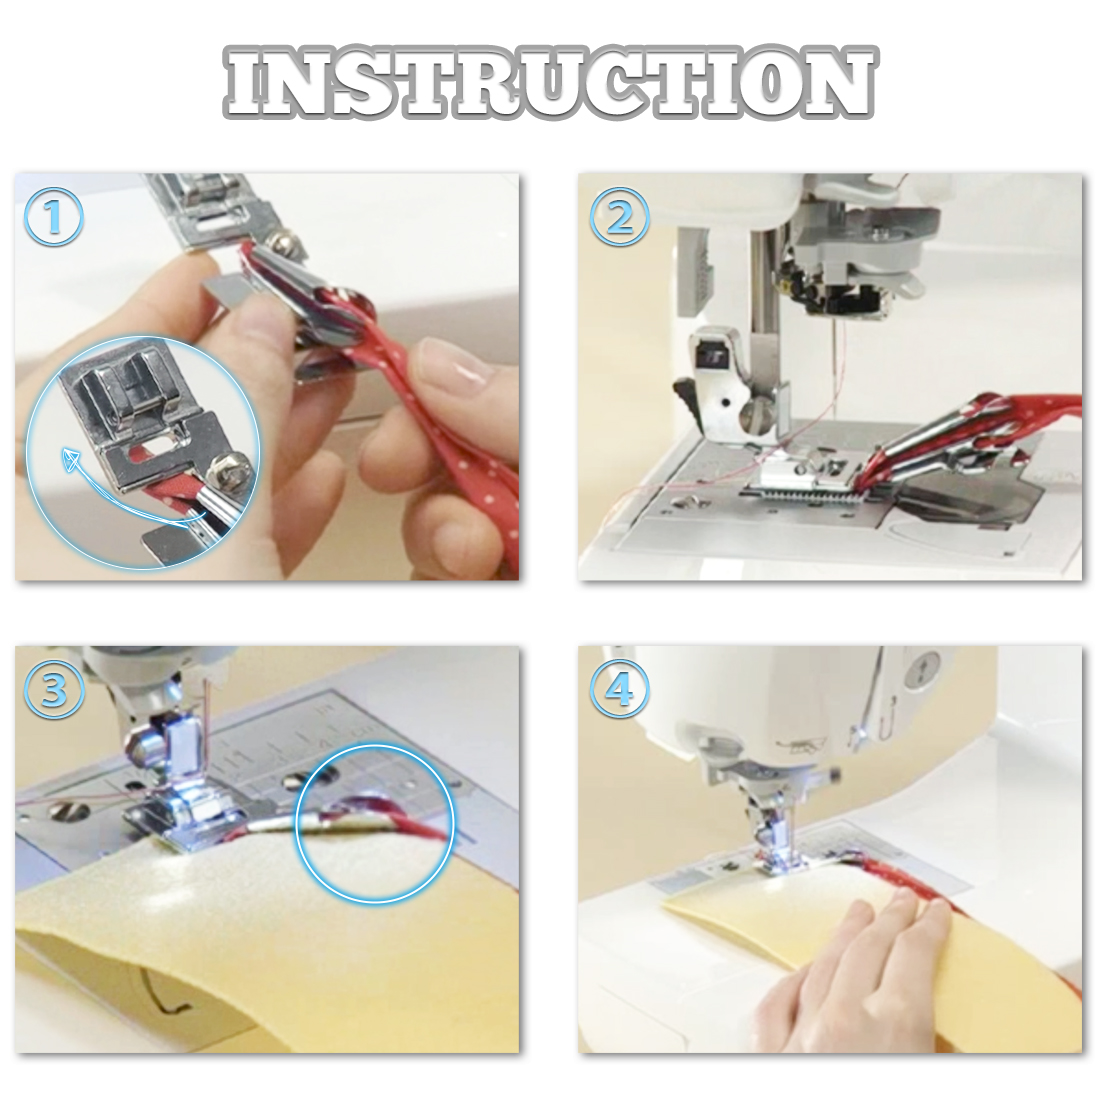 TKM Crafts Sewing Machine Binder Bias Tape Binding Foot Presser Foot Binder  Lockstitch Presser Foot Hemmer